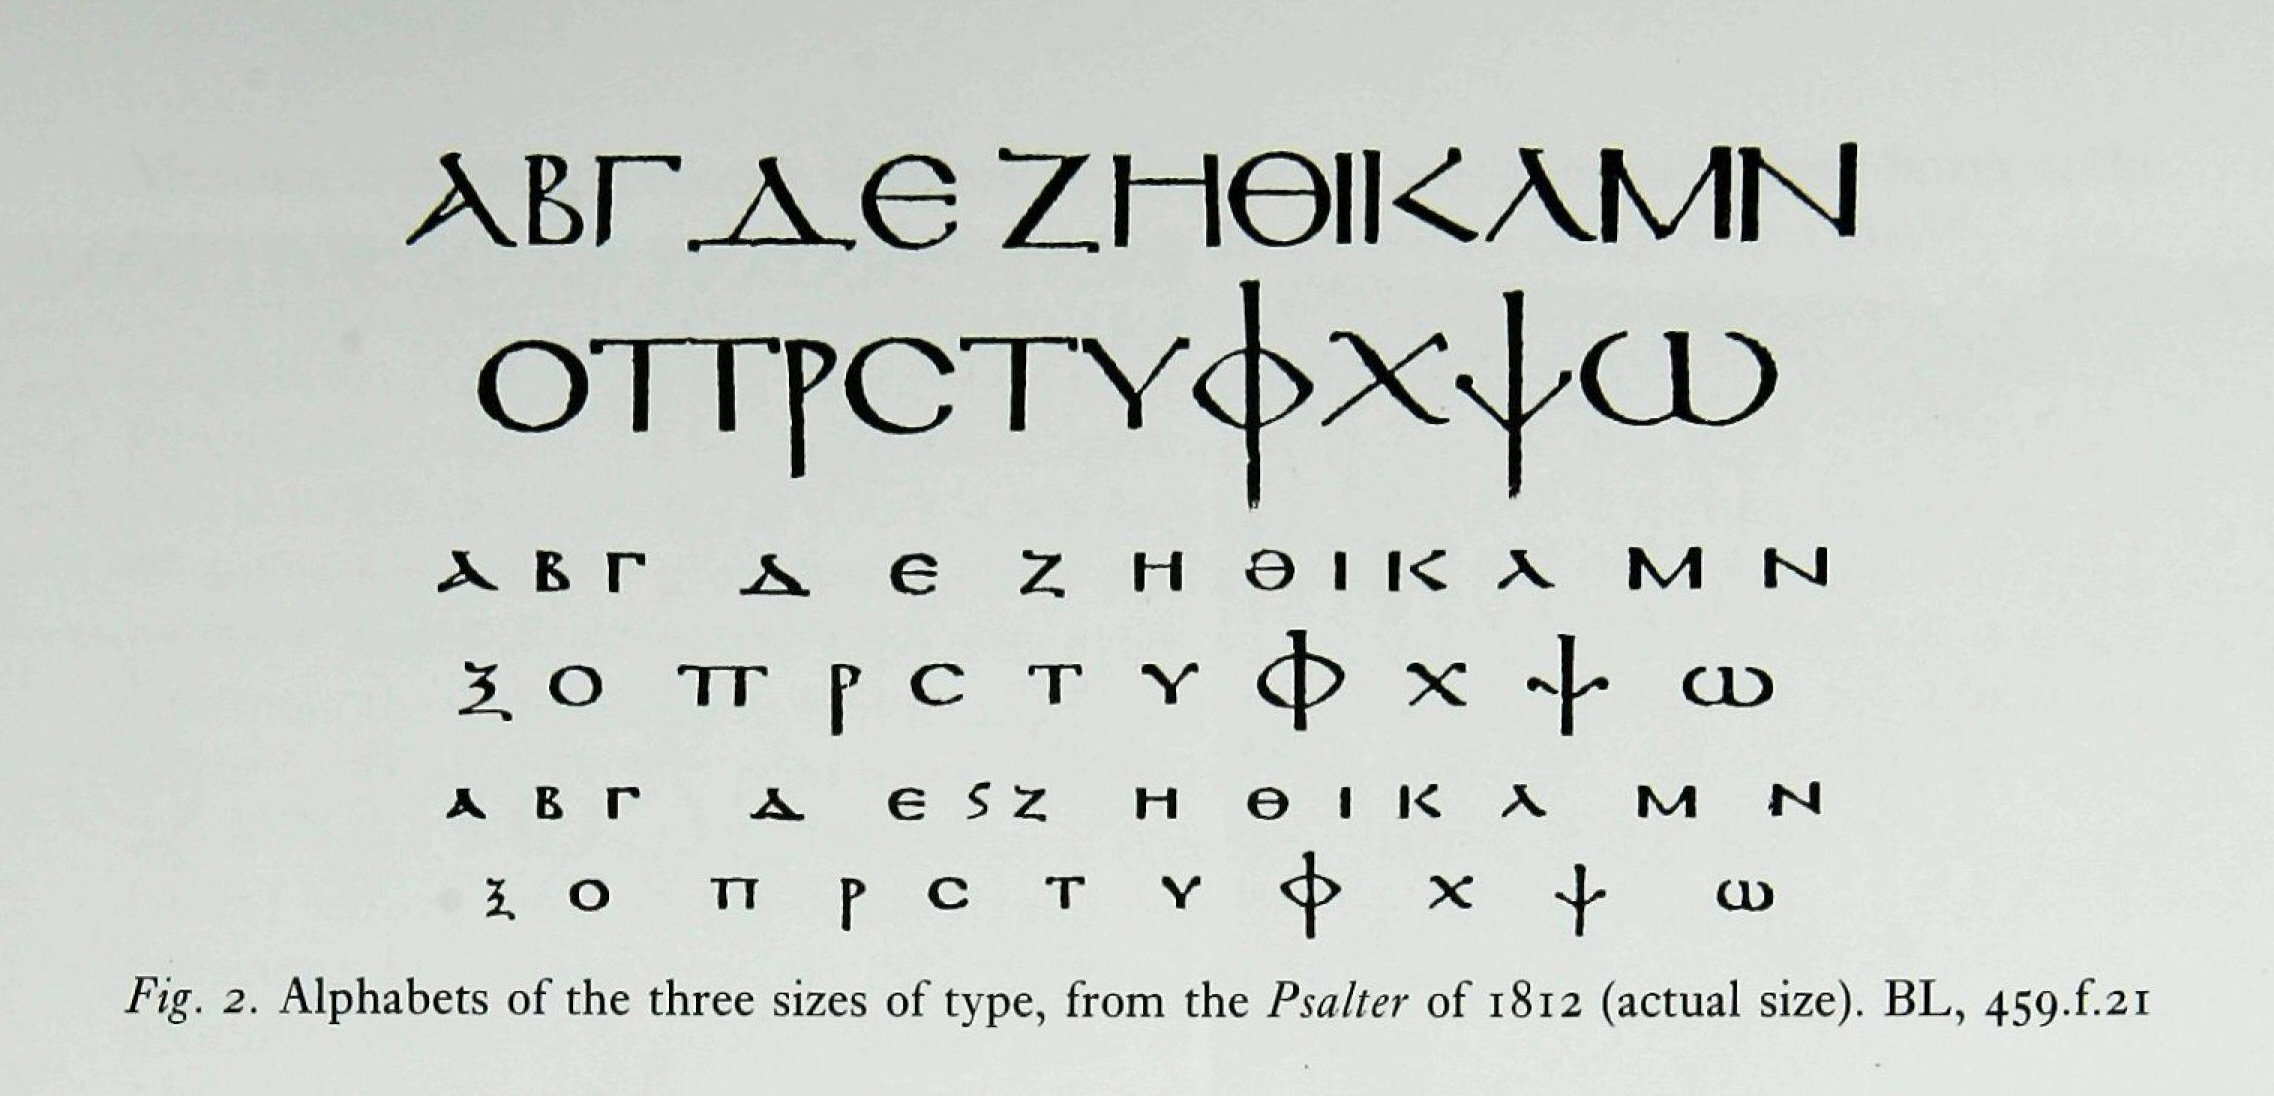 고대 그리스어 알파벳 읽는 법과 쓰는 법 그리고 발음